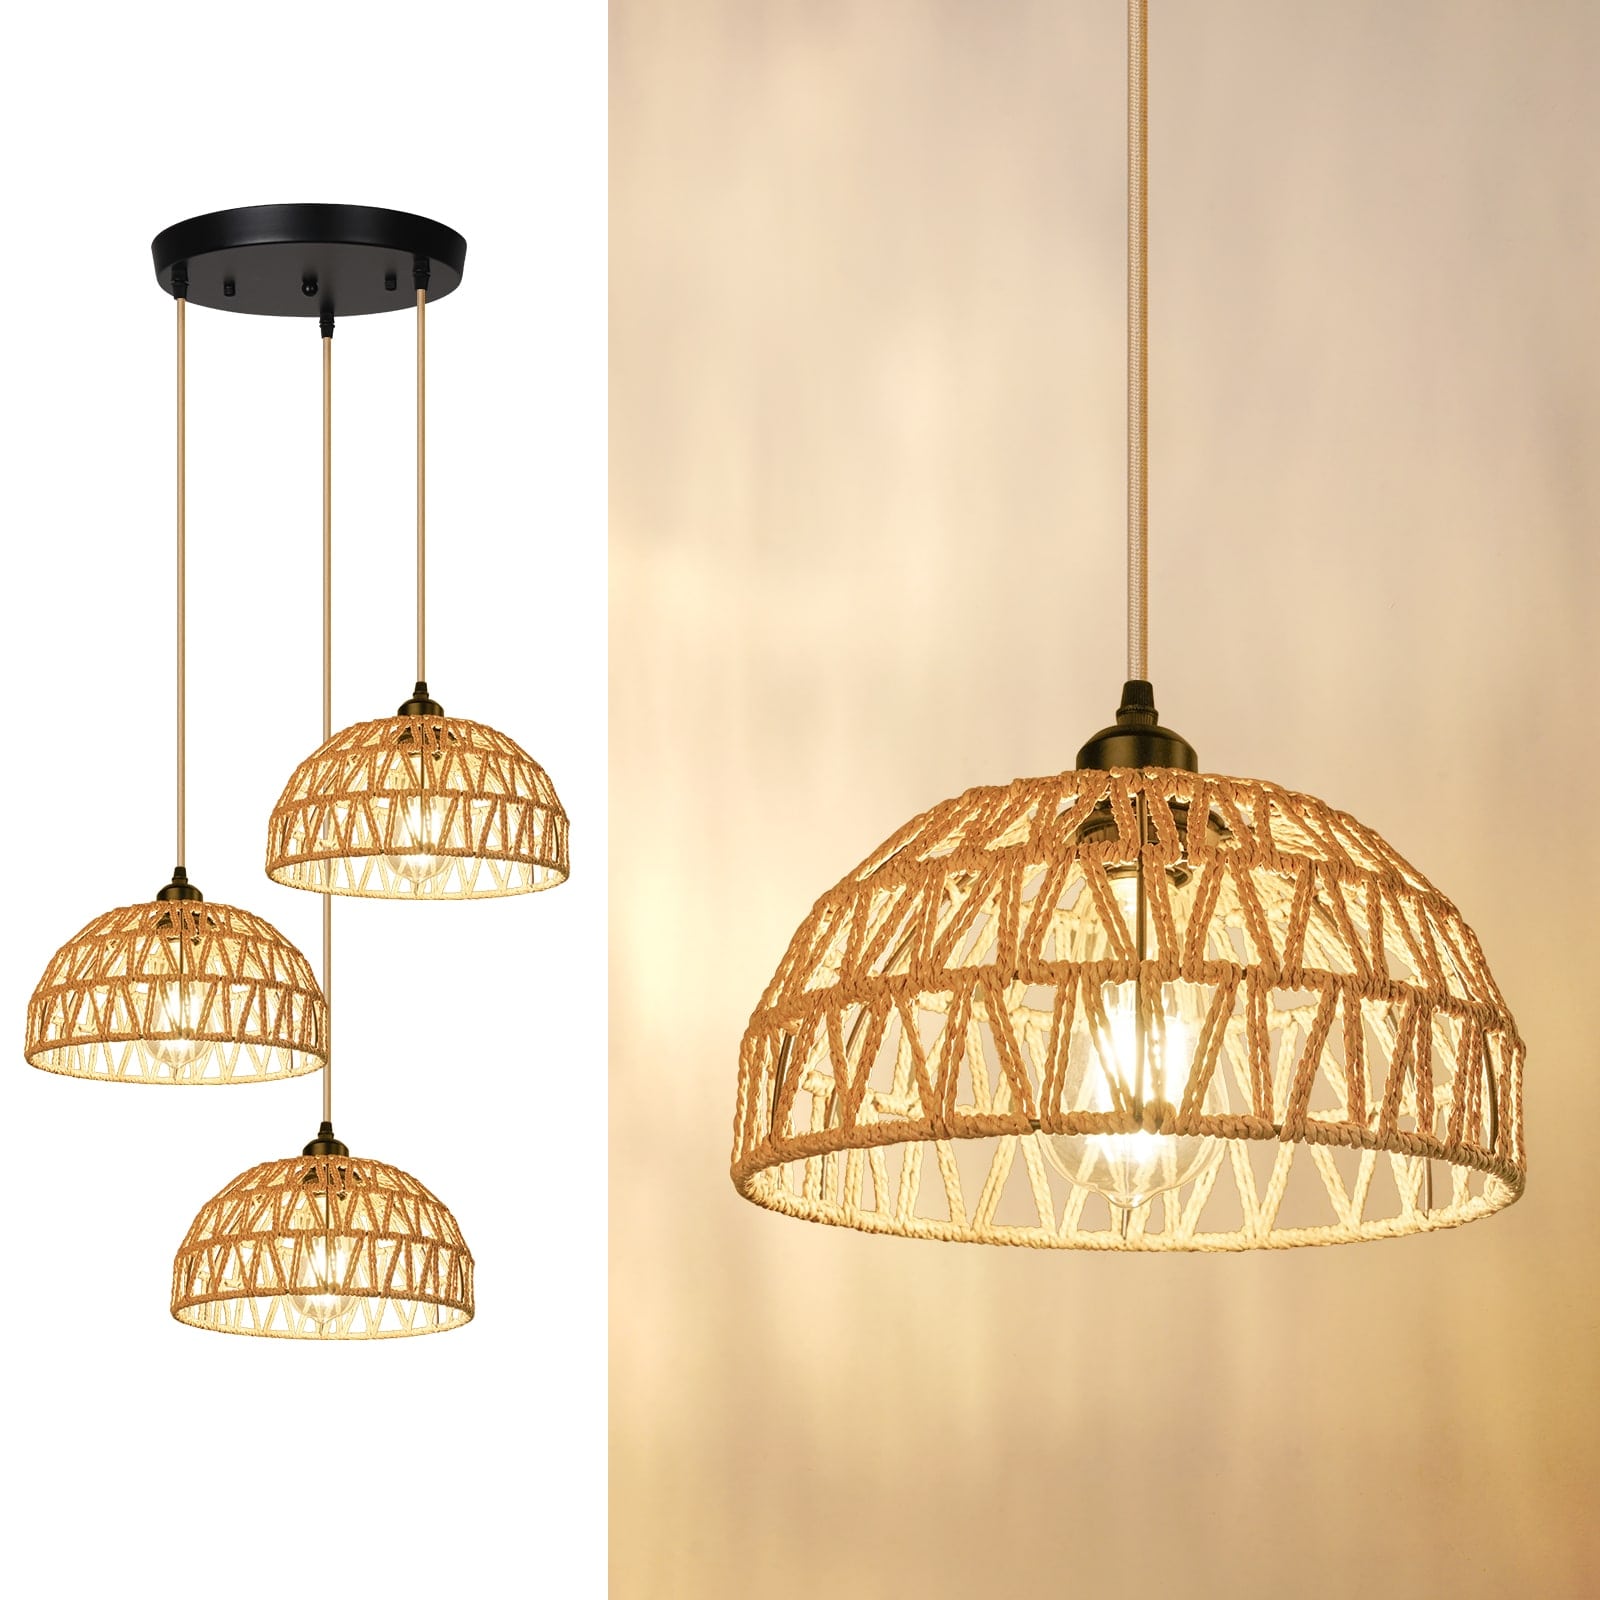 N05 3 Lights Adjustable Length Vintage Rattan Pendant Lamp for Bedroom